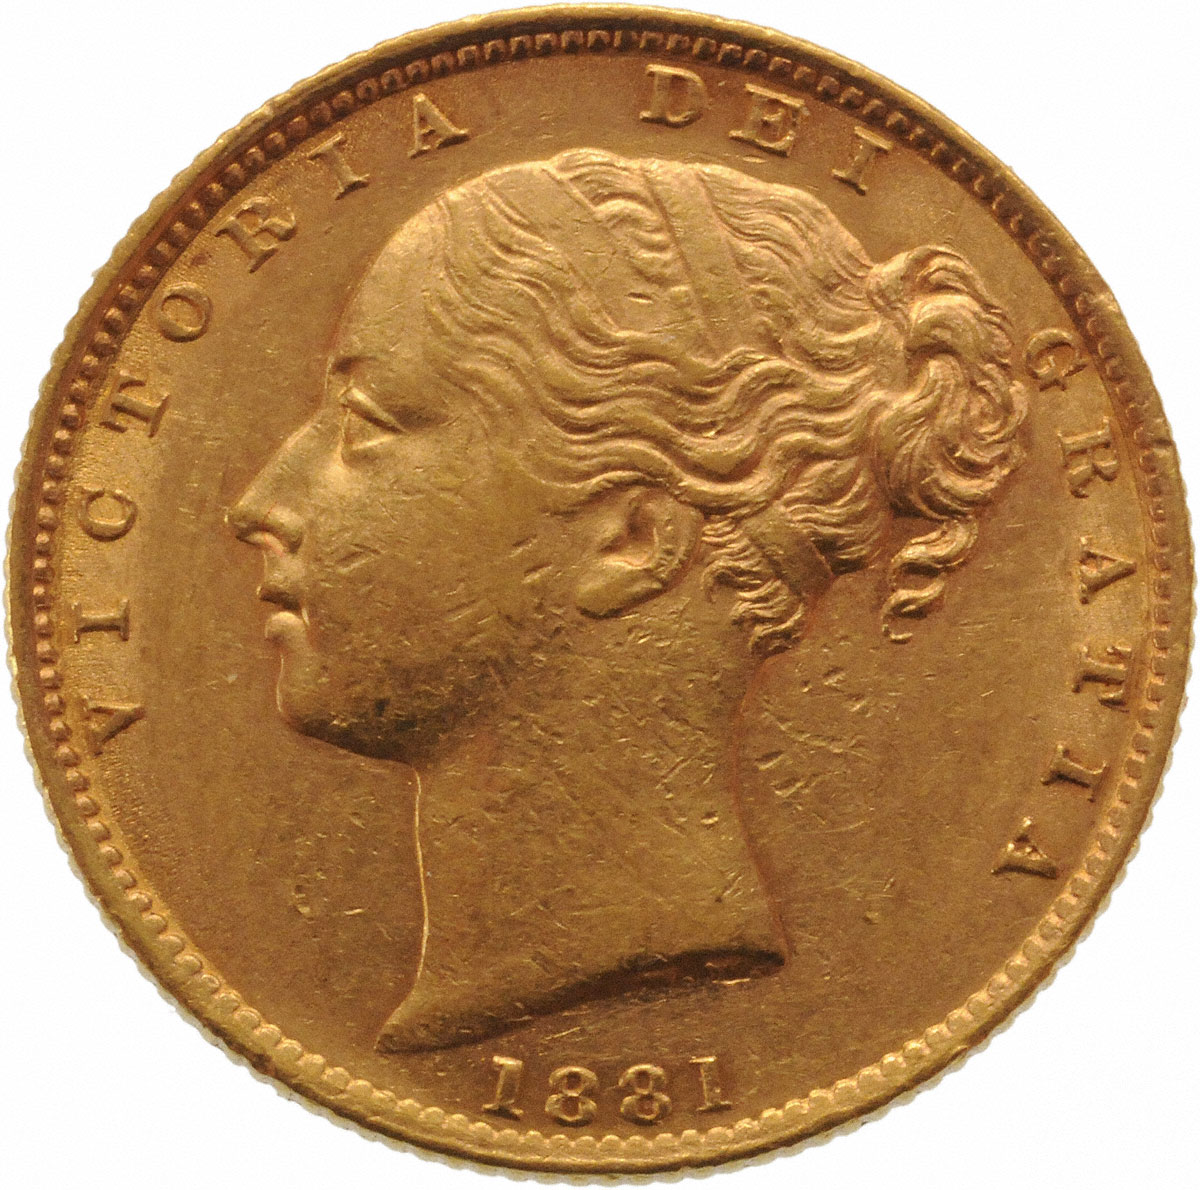 1881 Βικτώρια – Θυρεός (Νομισματοκοπείο Σίδνεϊ)